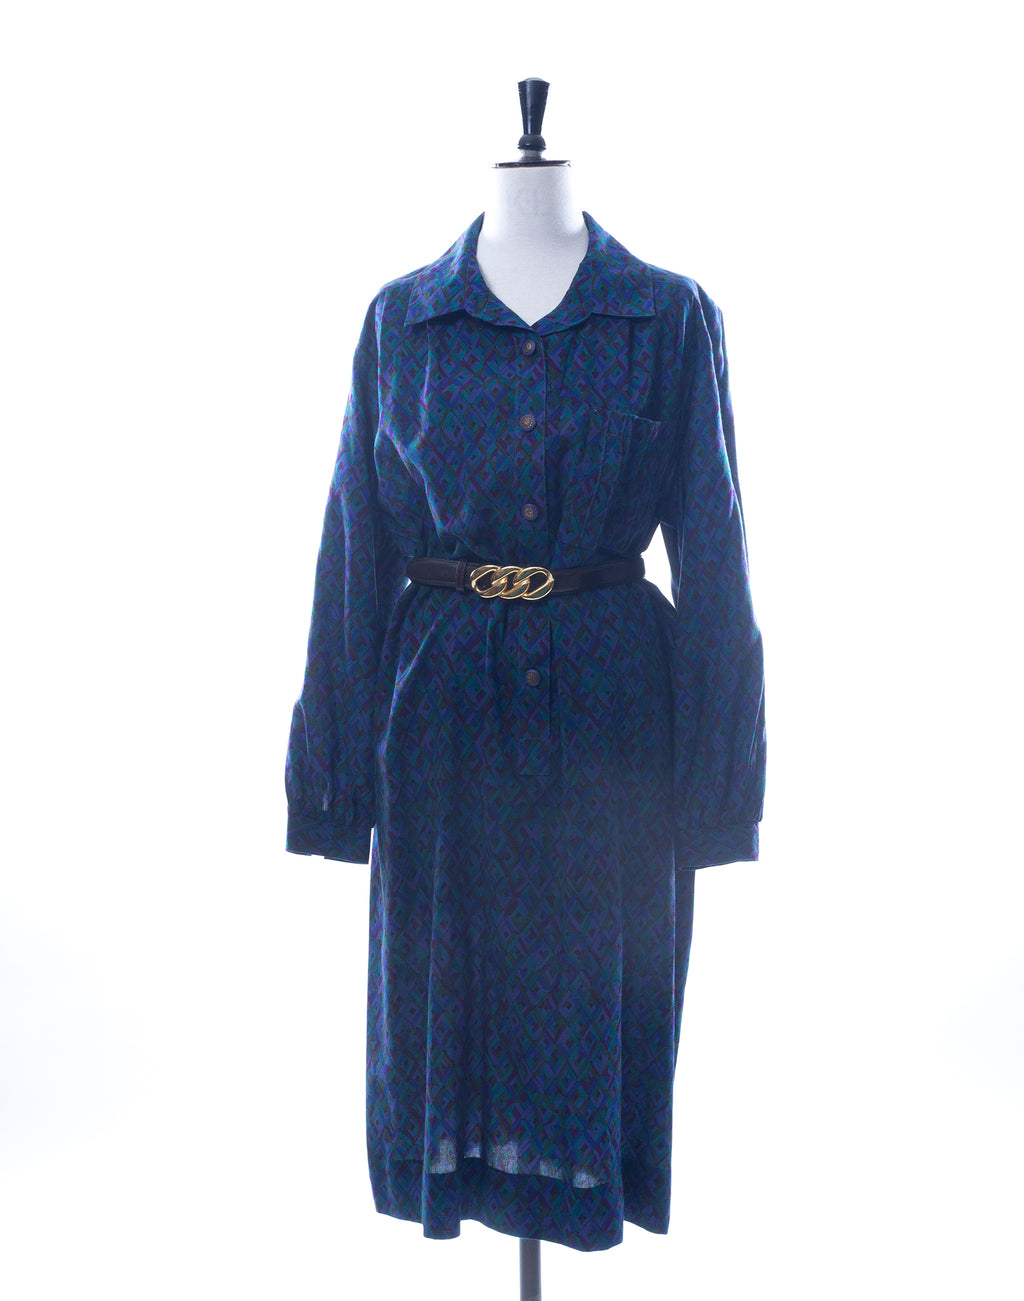 Vintage 80's Blue Graphic Print Long Sleeve Dress - Size M/L